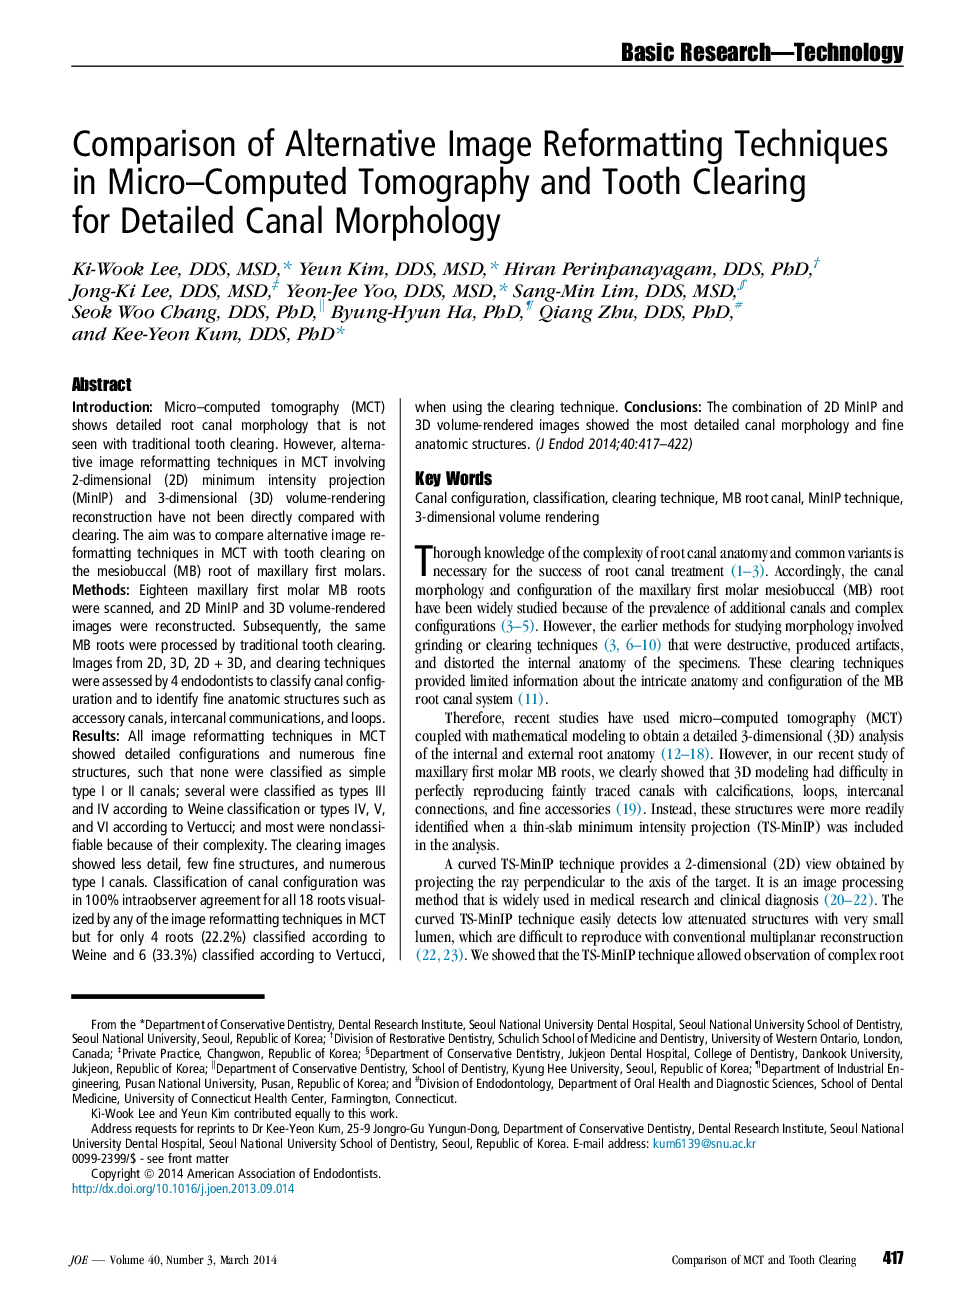 مقایسه تکنیک های پردازش تصویر جایگزین در توموگرافی کامپیوتری میکرو و پاکسازی دندان برای مورفولوژی کانال های دقیق 